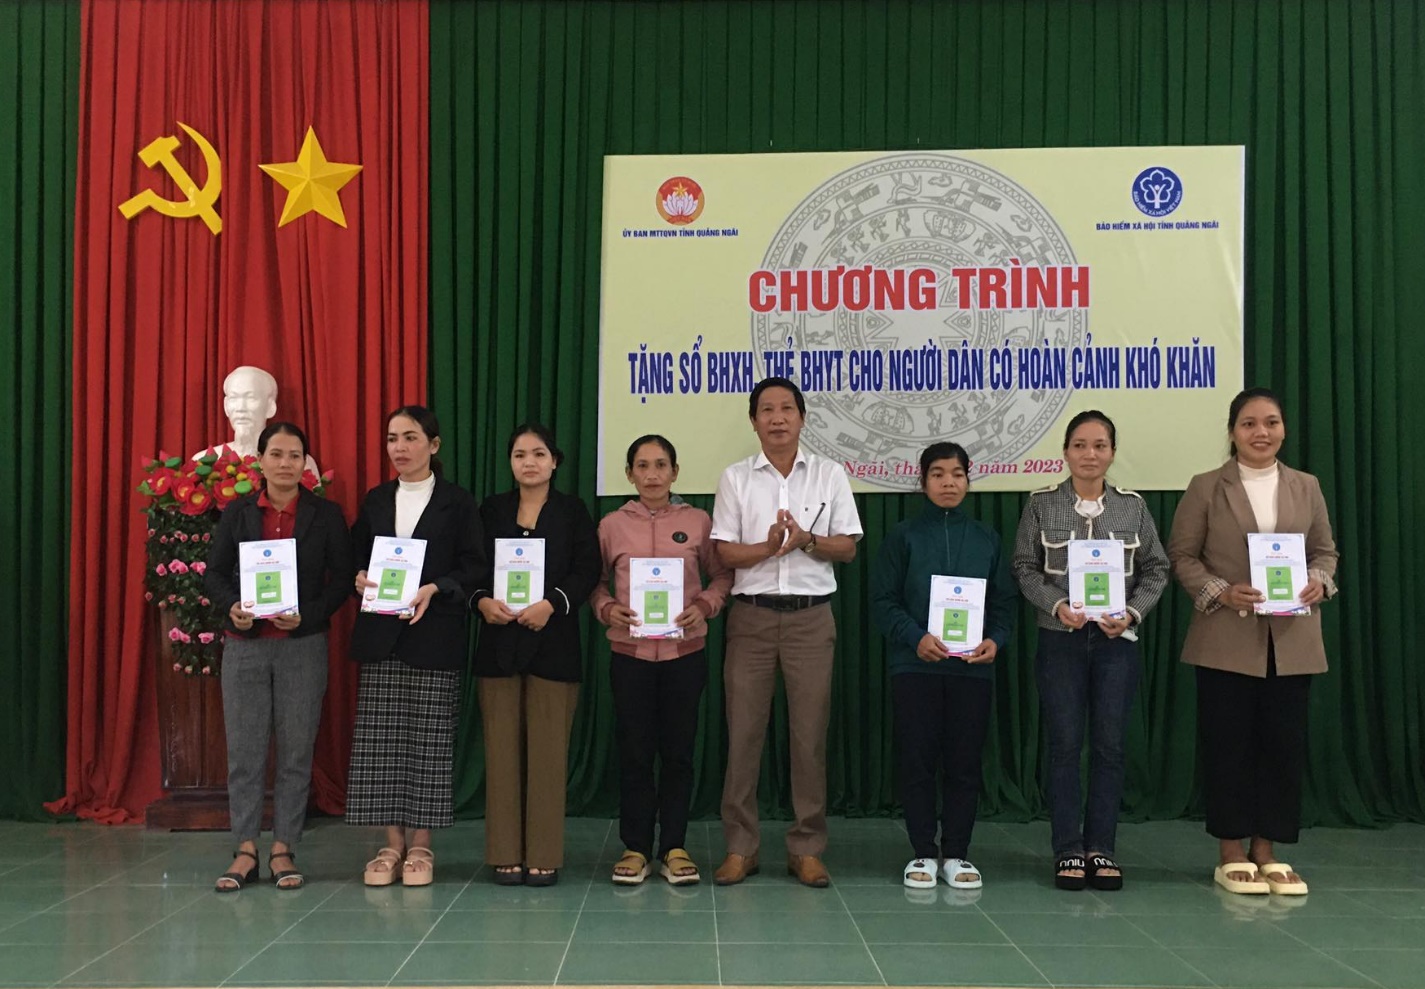 Bảo hiểm xã hội tỉnh Quảng Ngãi trao tặng sổ Bảo hiểm xã hội và thẻ BHYT cho người dân có hoàn cảnh khó khăn trên địa bàn huyện Tư Nghĩa